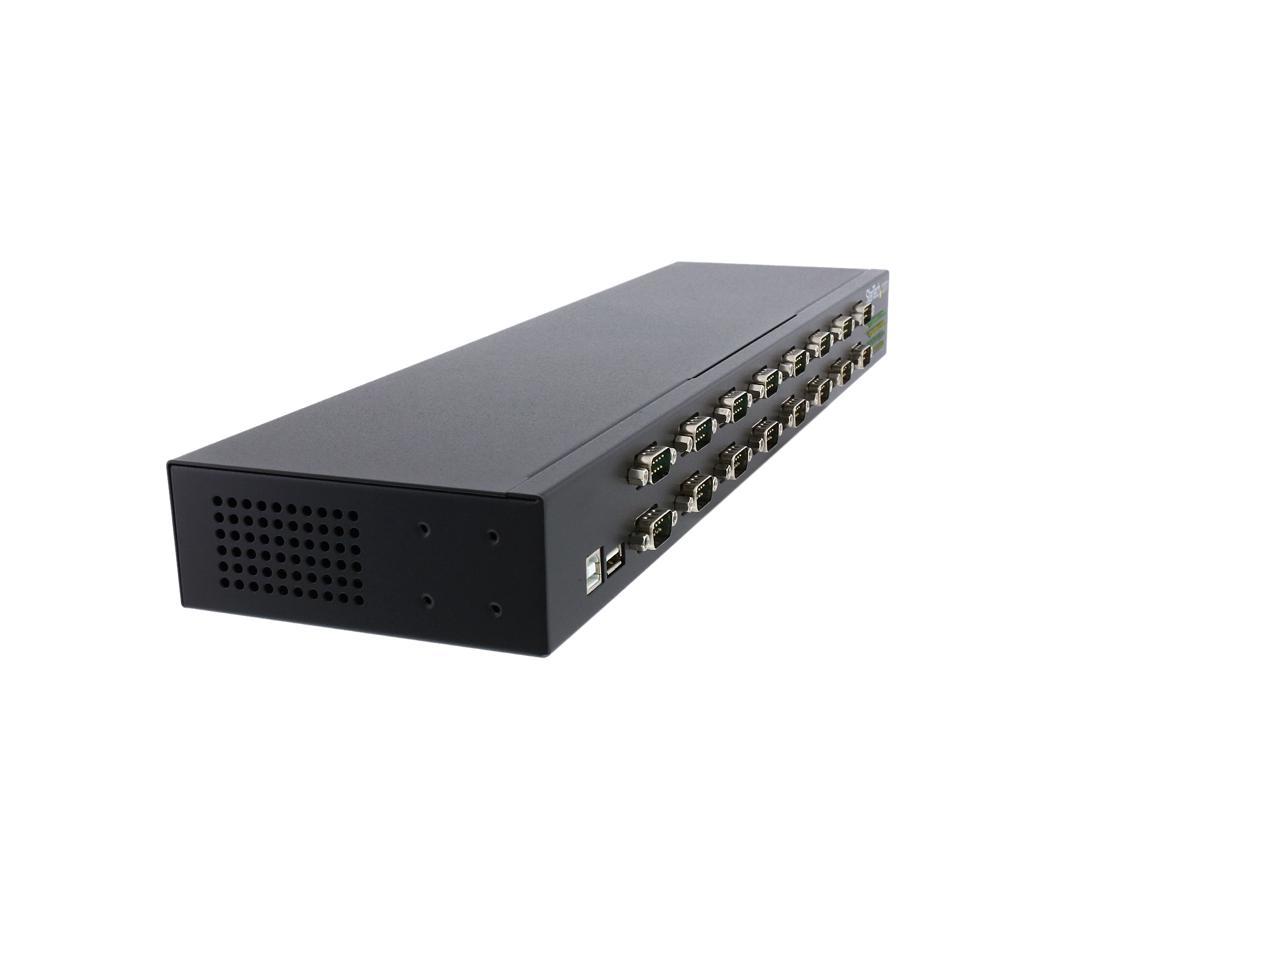 StarTech.com ICUSB23216FD USB to Serial Hub - 16 Port - COM Port 